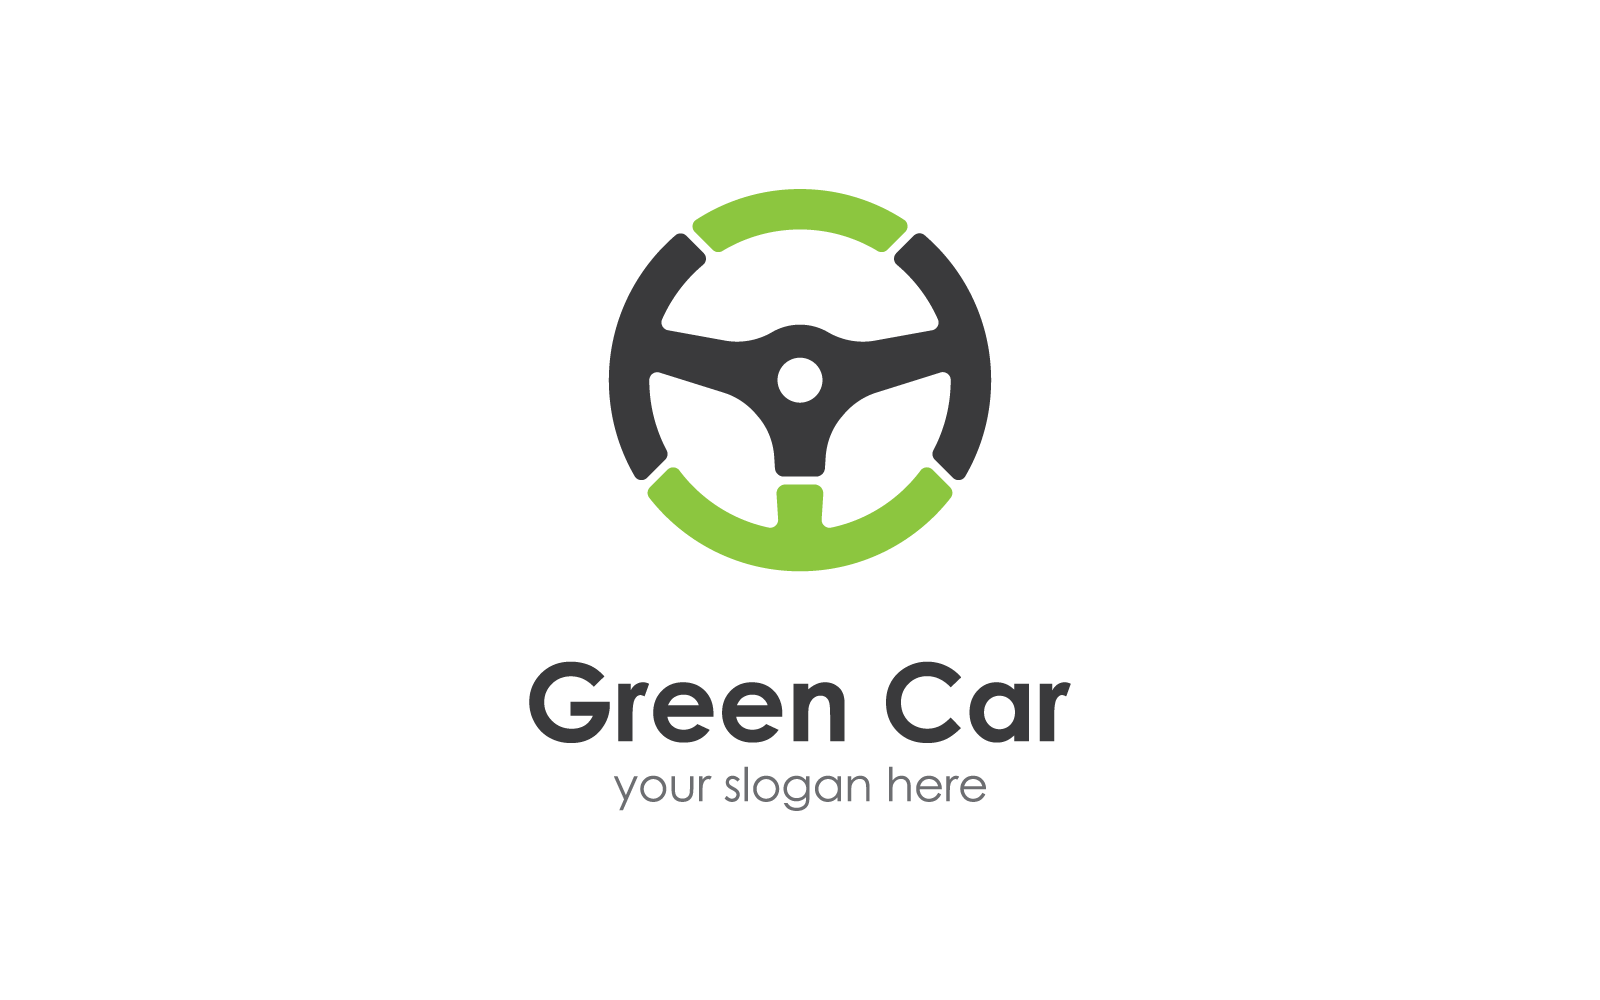 Steering wheel green car logo vector illustration design